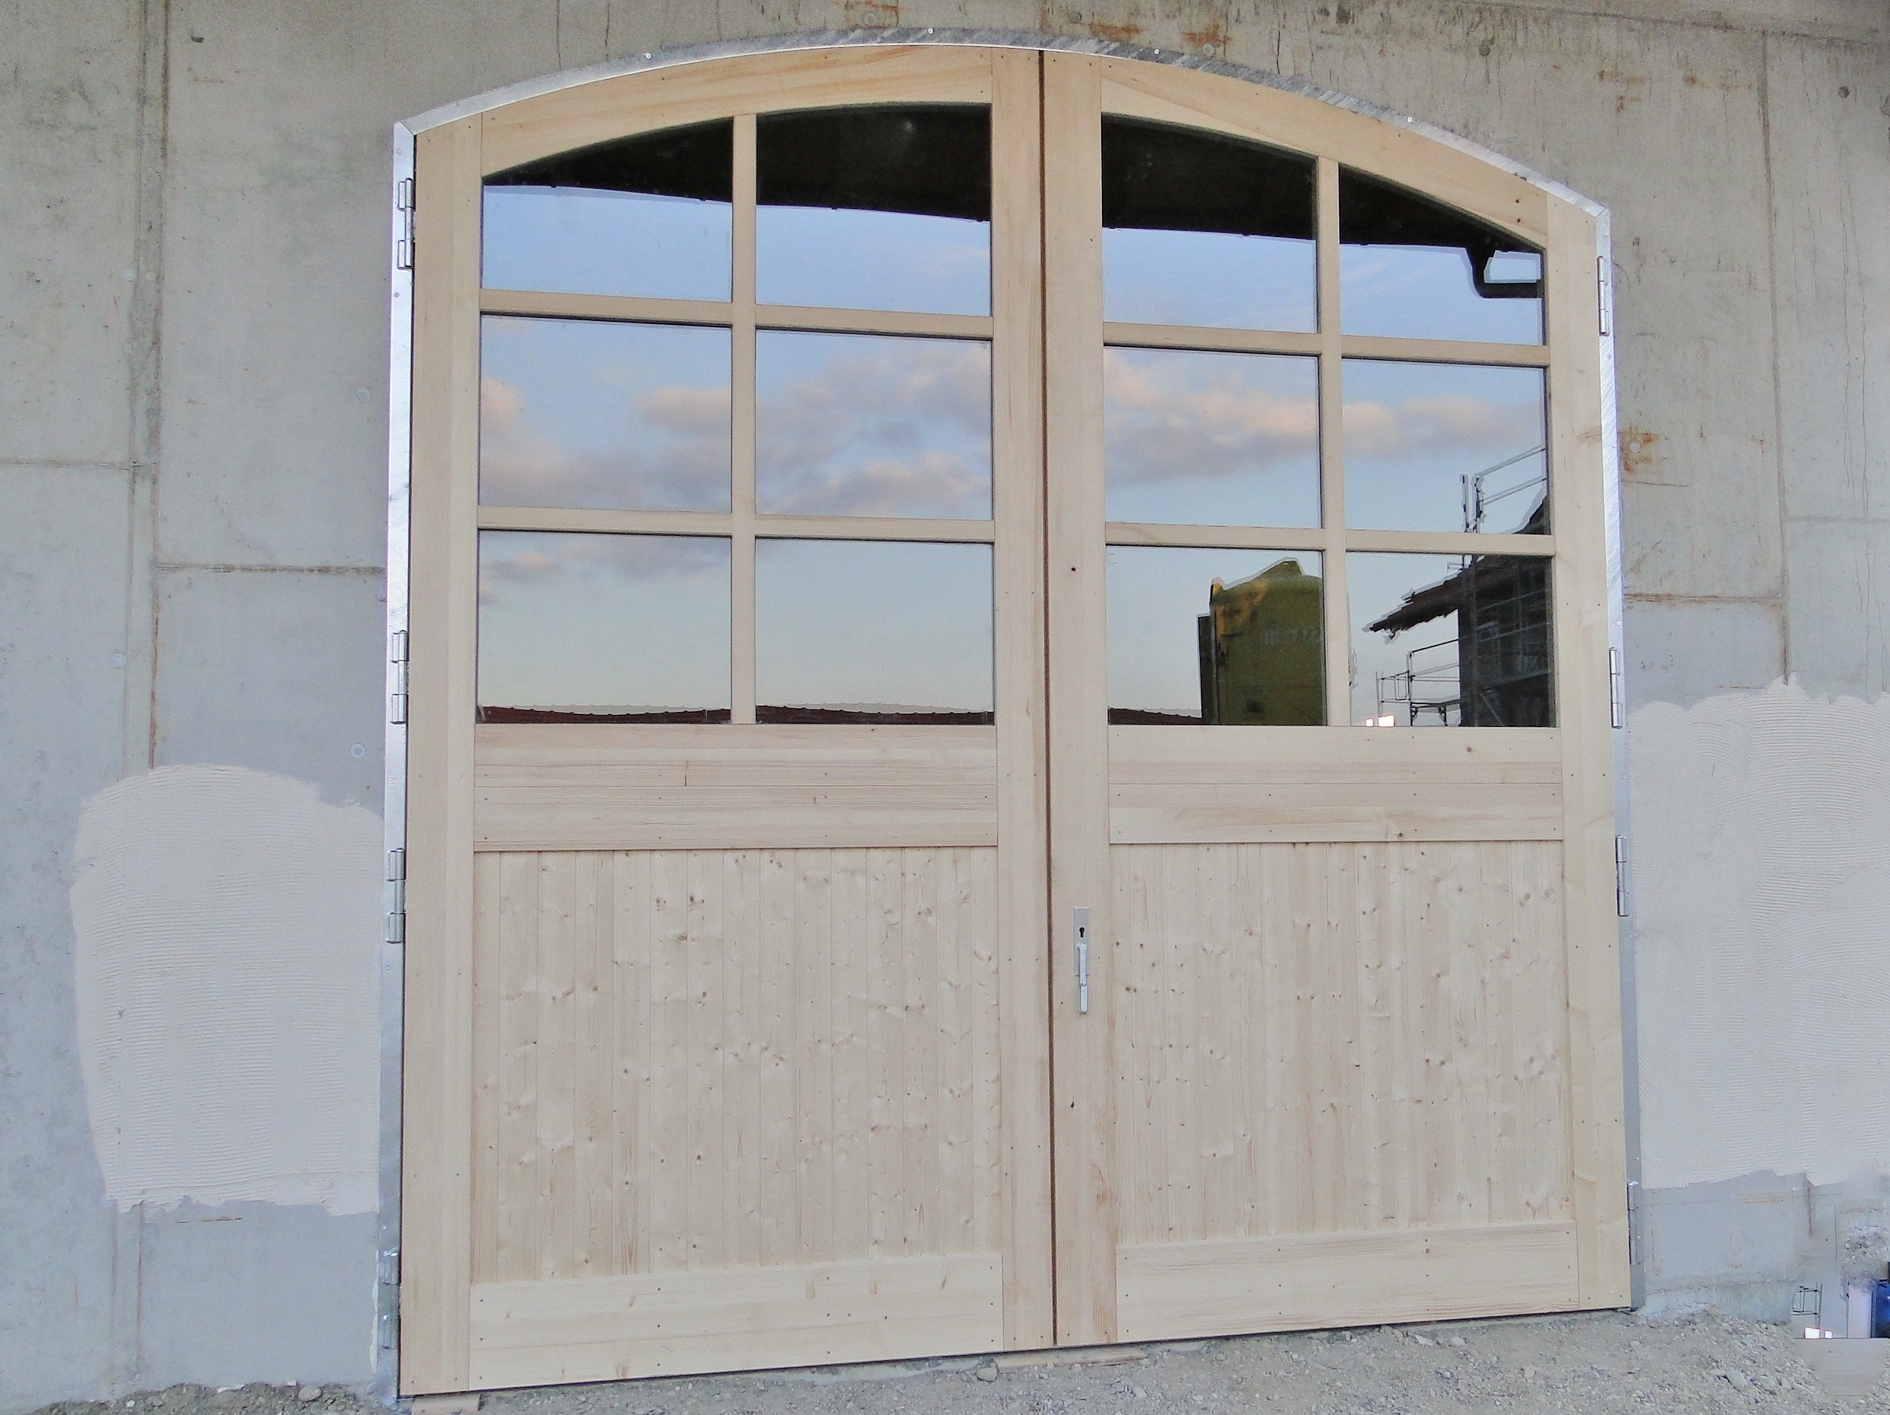 Holzflügeltor mit Segmentbogen, 4 x 4,25 m, Fenster mit glasteilenden Sprossen, aufgeschraubte Sprossen.jpg